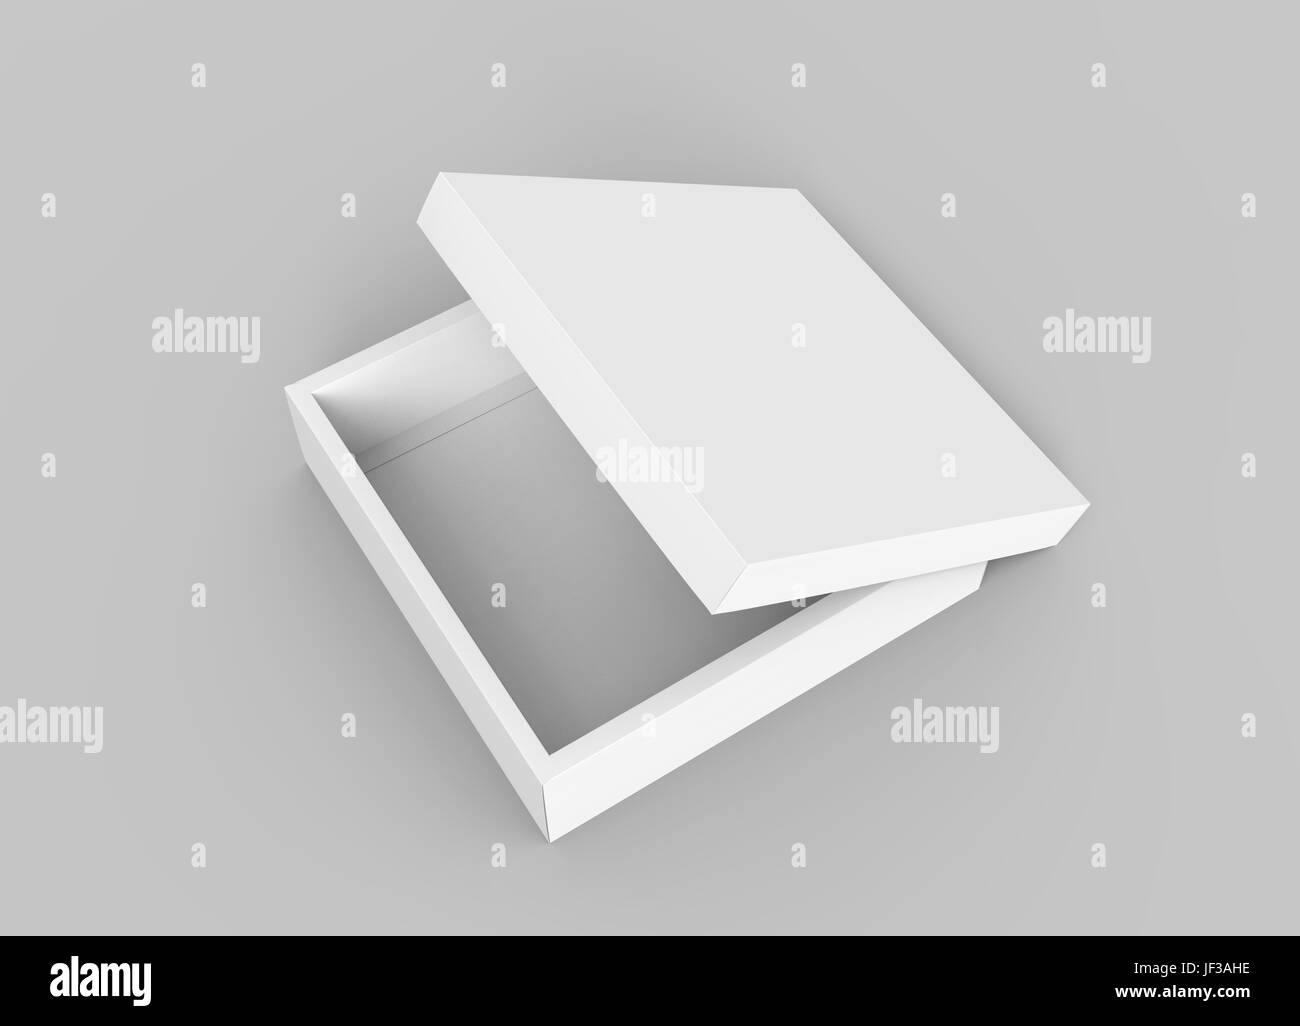 Vuoto inclinazione sinistra flat 3d rendering aperto a metà filate quadrato bianco scatola con coperchio separato, isolato sfondo grigio chiaro vista in elevazione Foto Stock